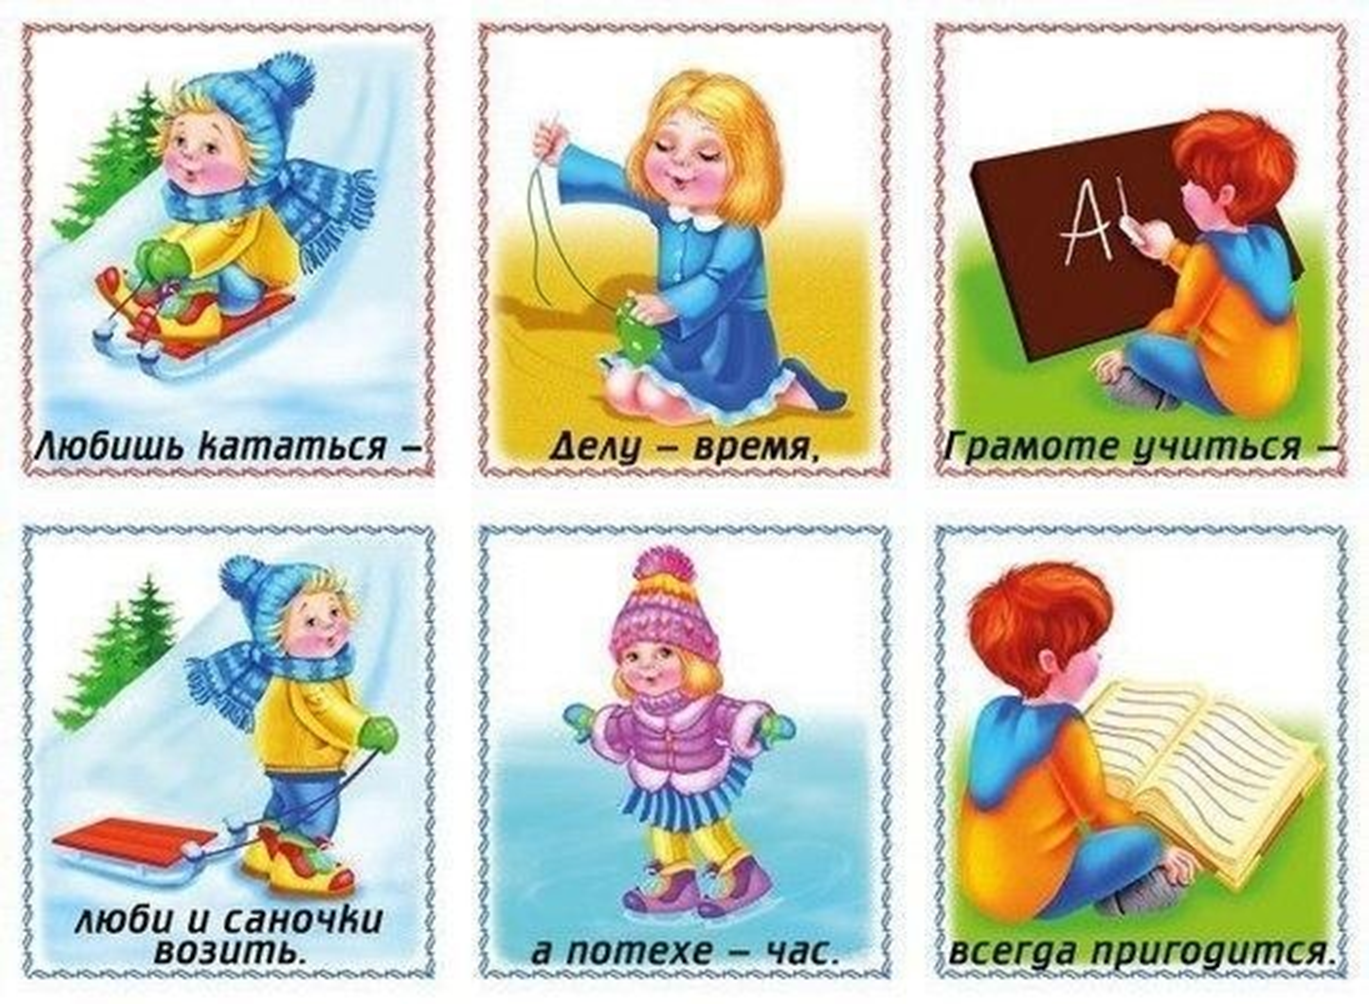 Русские пословицы для детей. Пословицы и поговорки для детей. Поговорки для детей. Пословицы для детей. Пословицы в картинках для детей.